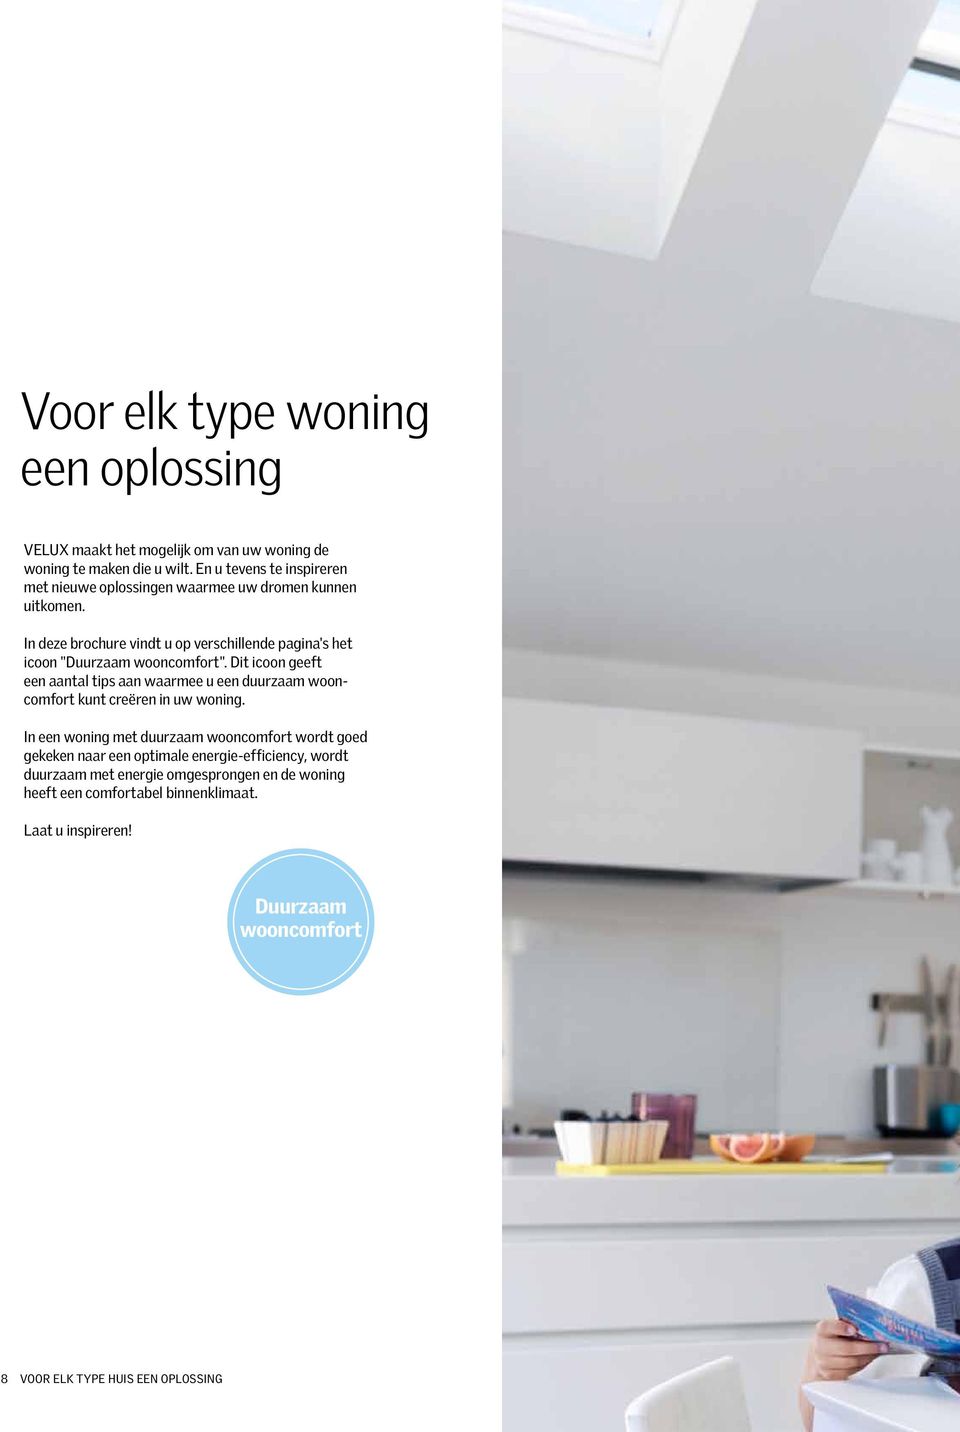 In deze brochure vindt u op verschillende pagina's het icoon "Duurzaam wooncomfort".